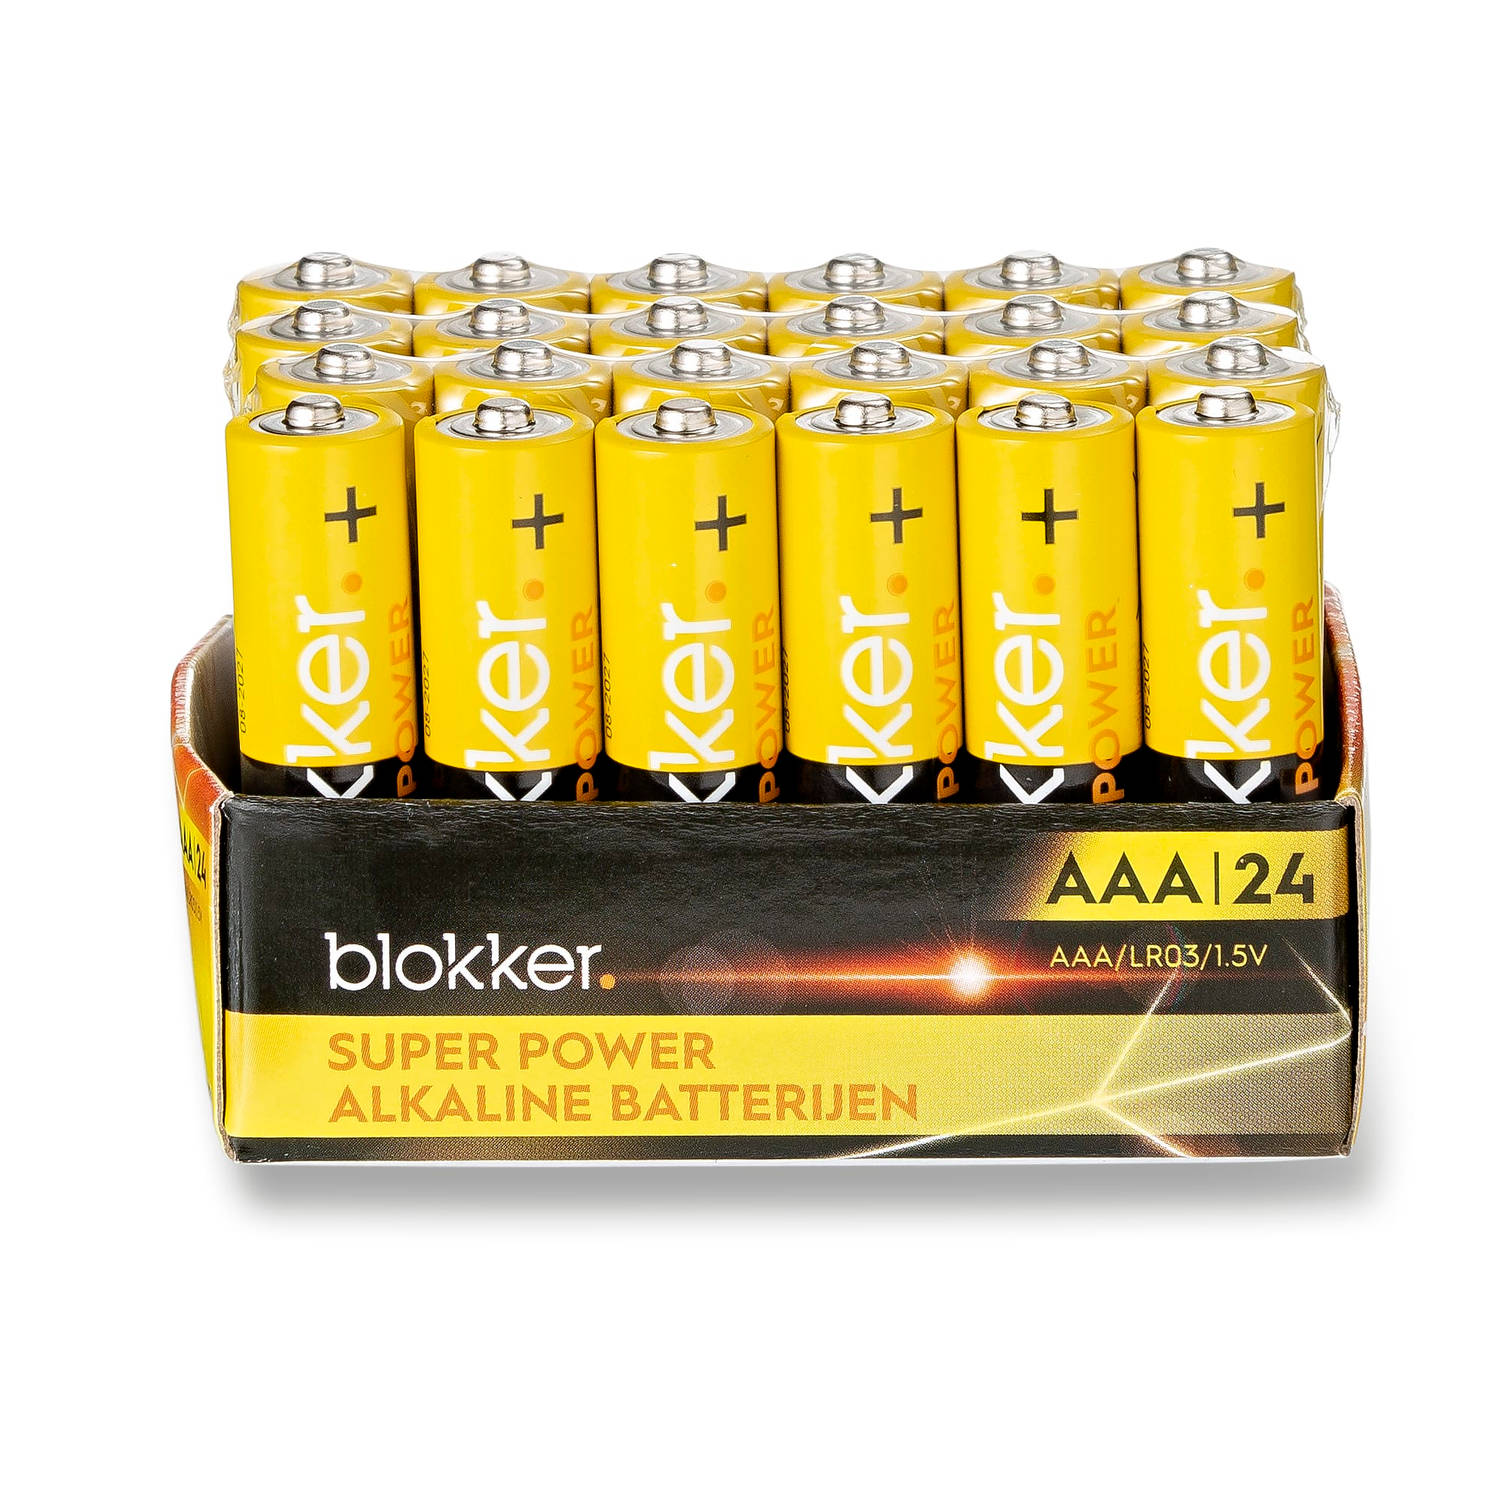 Higgins Aanvankelijk breken Blokker Alkaline Batterijen - AAA - 24 stuks | Blokker